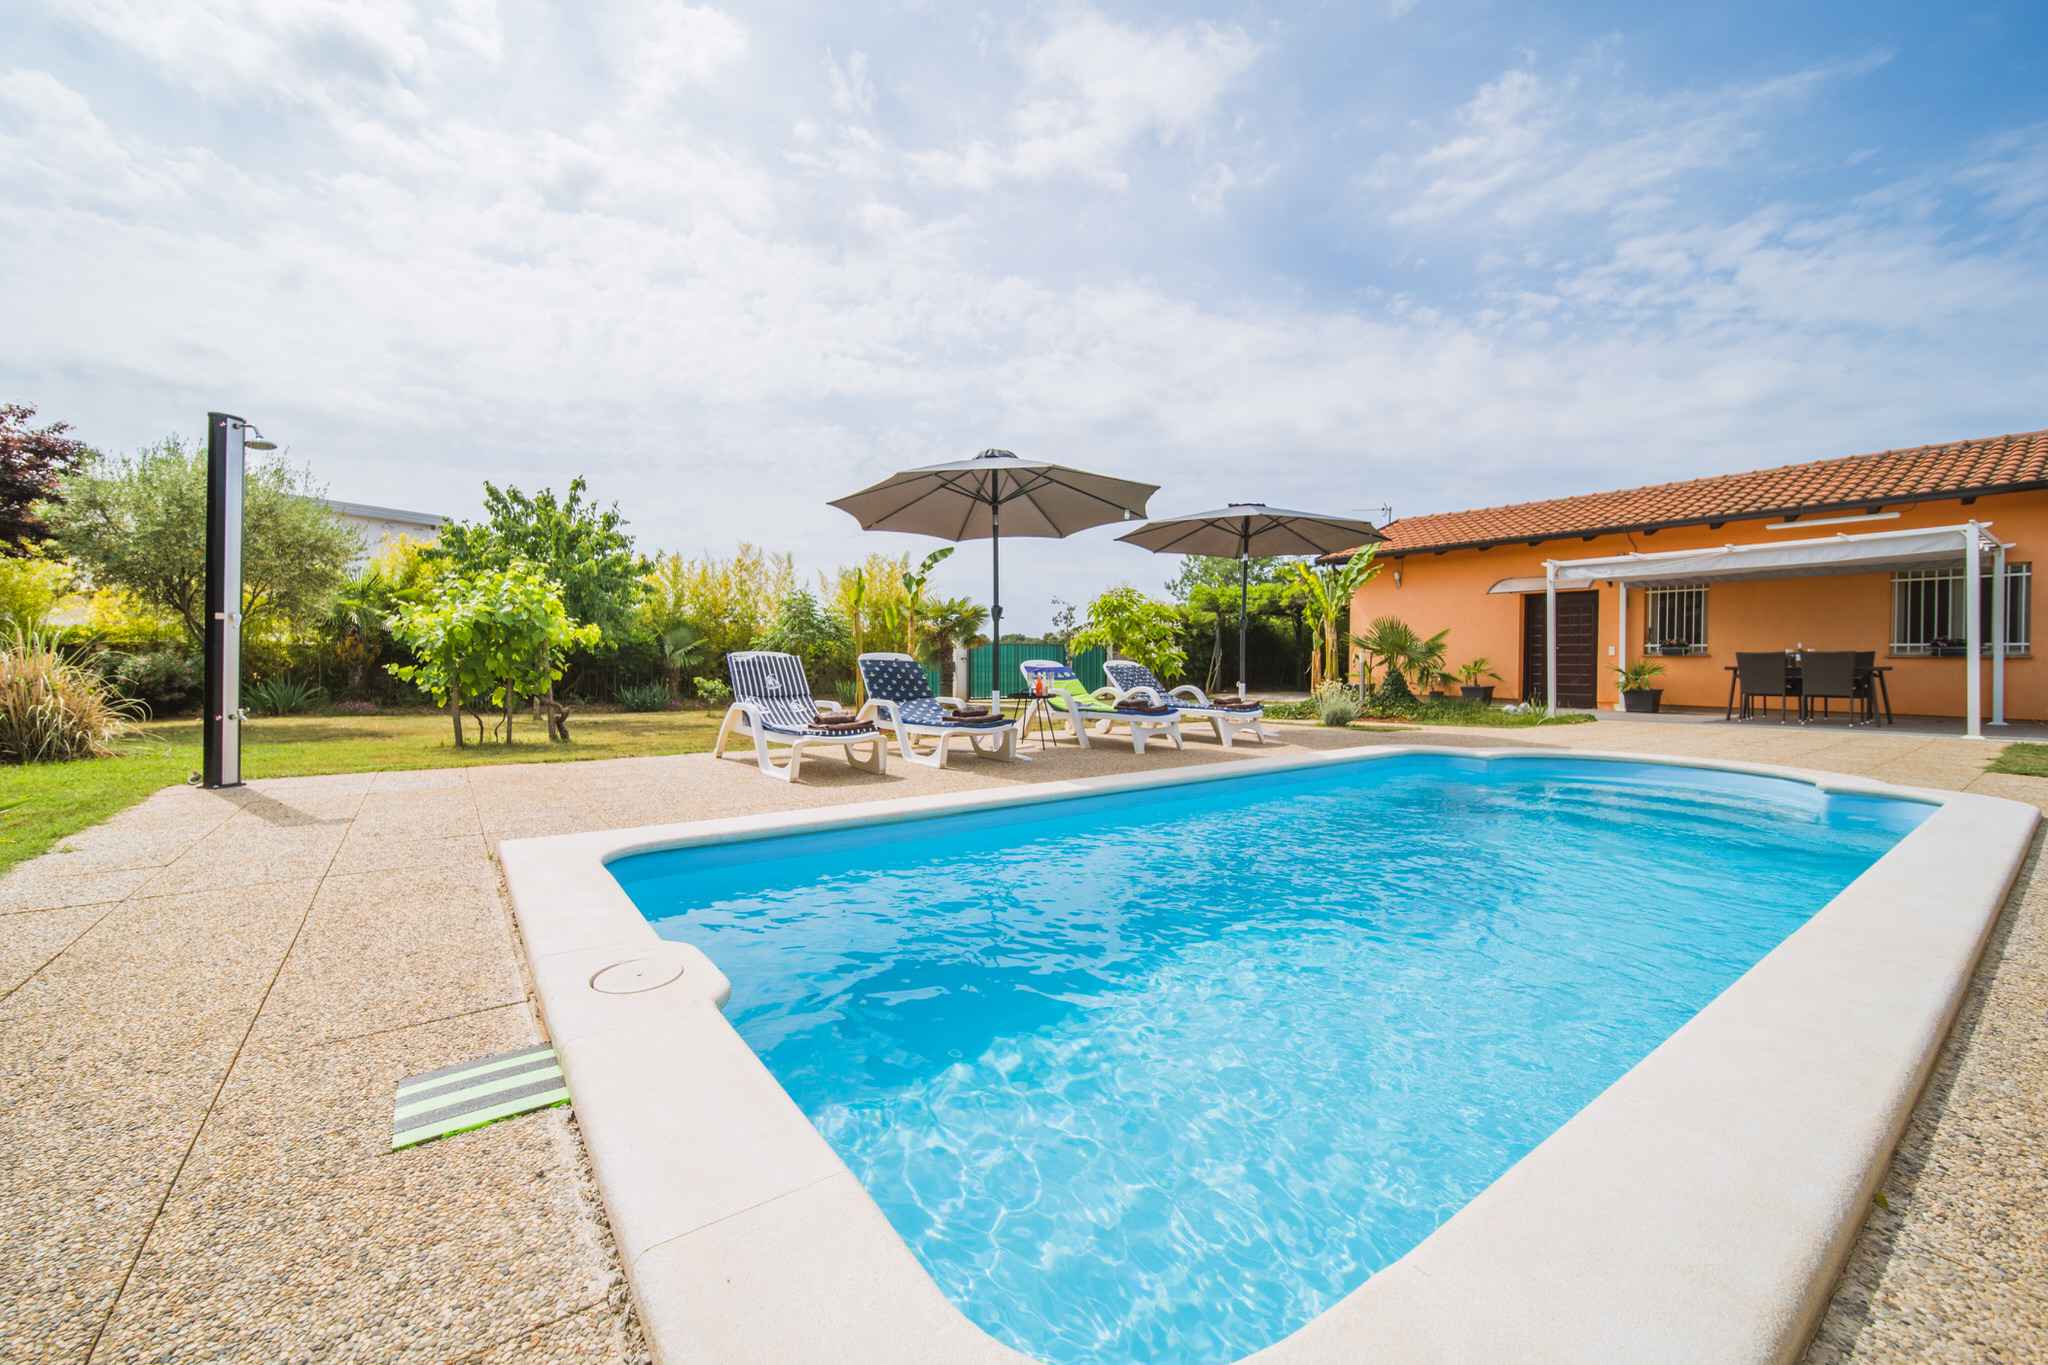 Villa mit Pool ruhig gelegen Ferienhaus in Kroatien